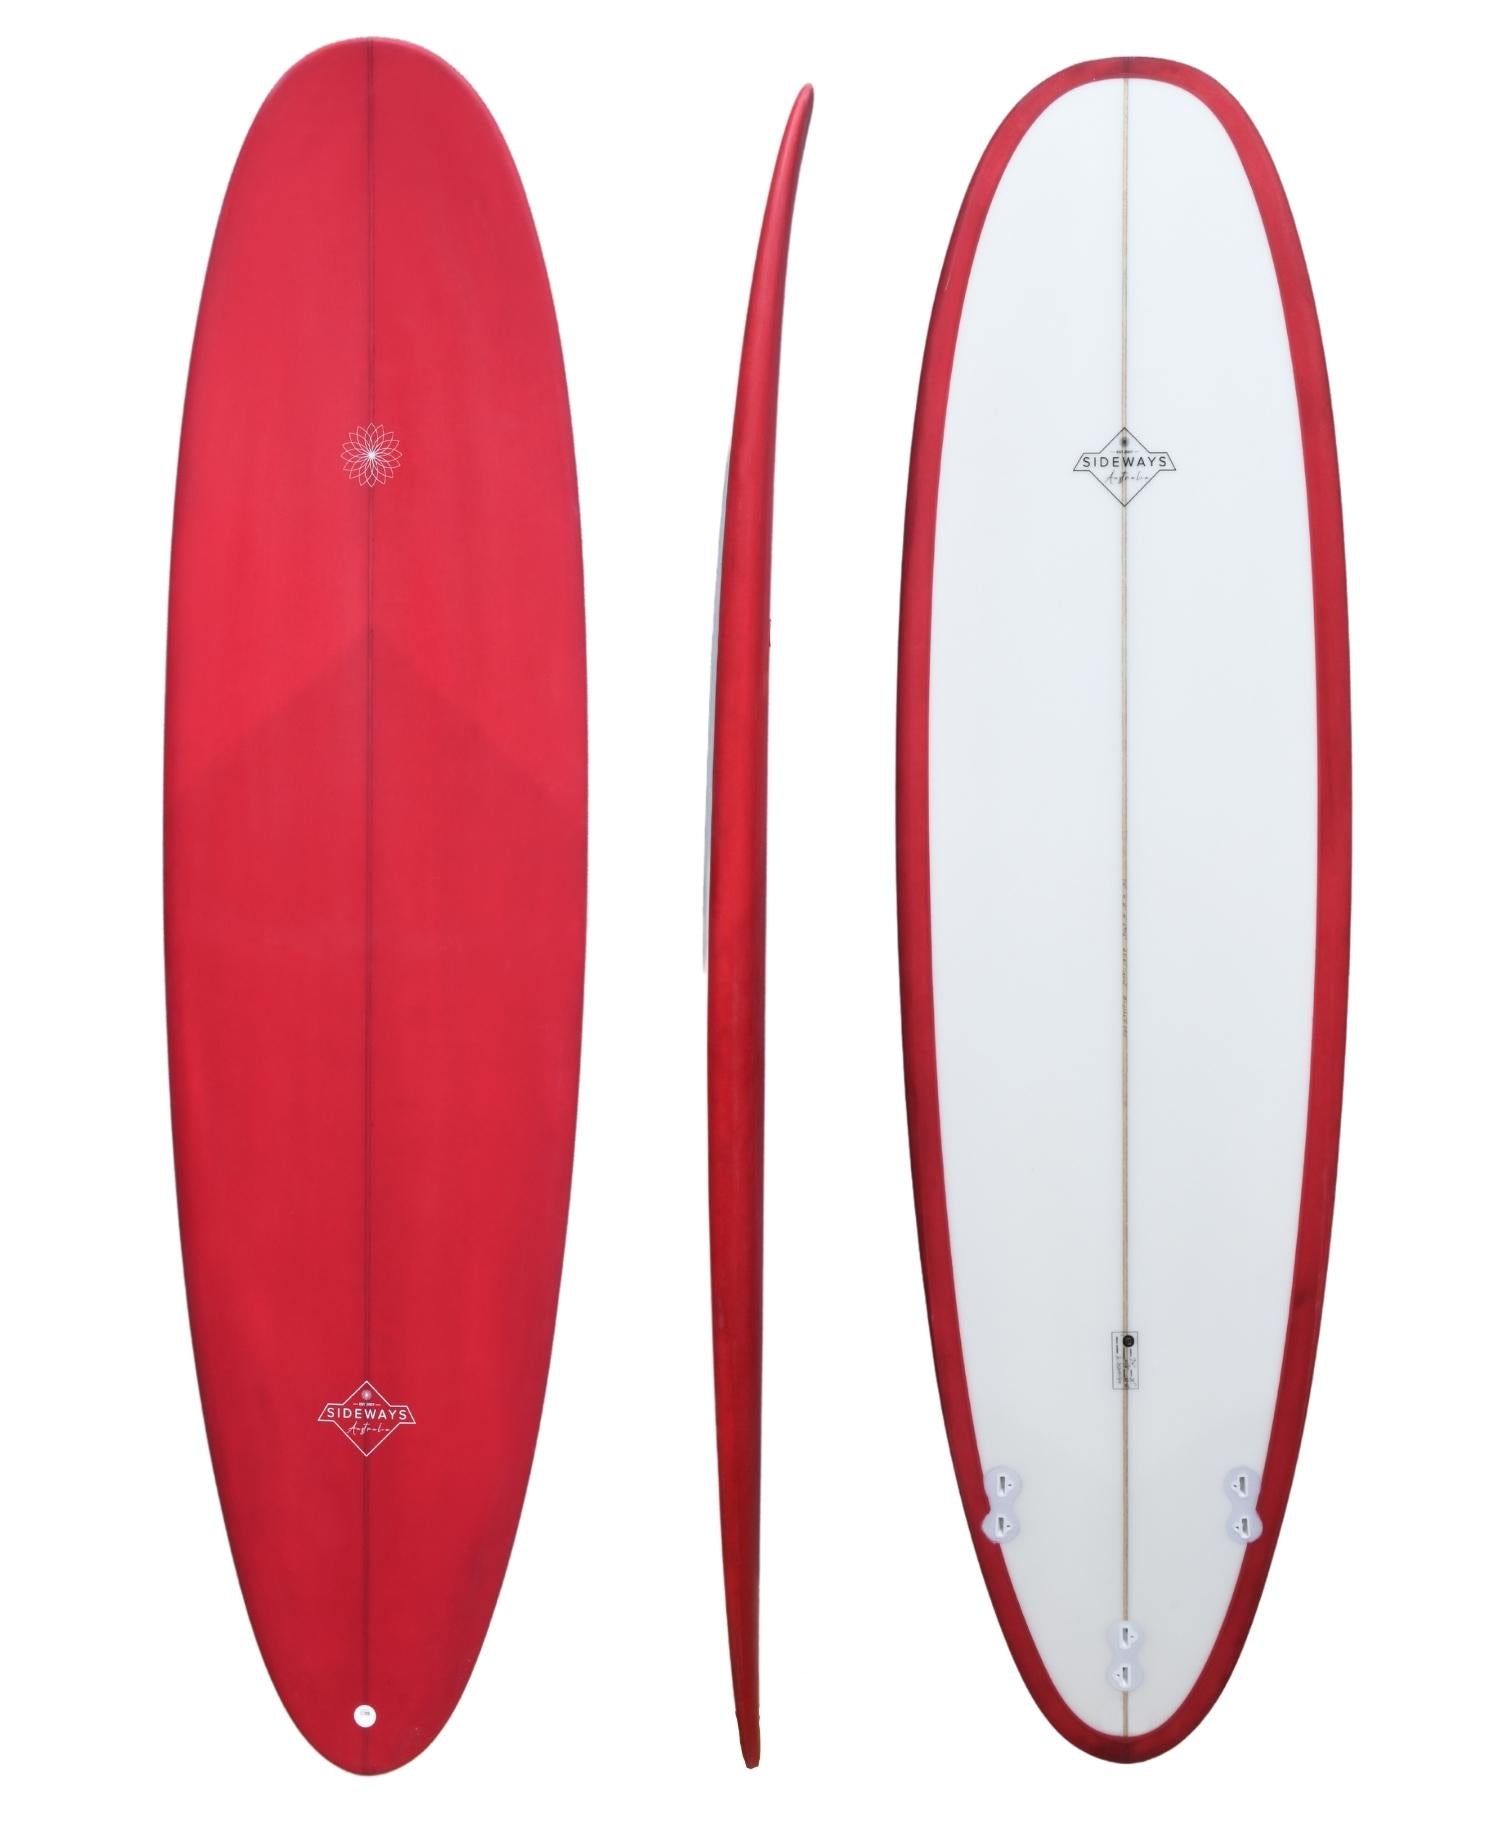 Sideways Mini Mal Bullet Surfboard Red